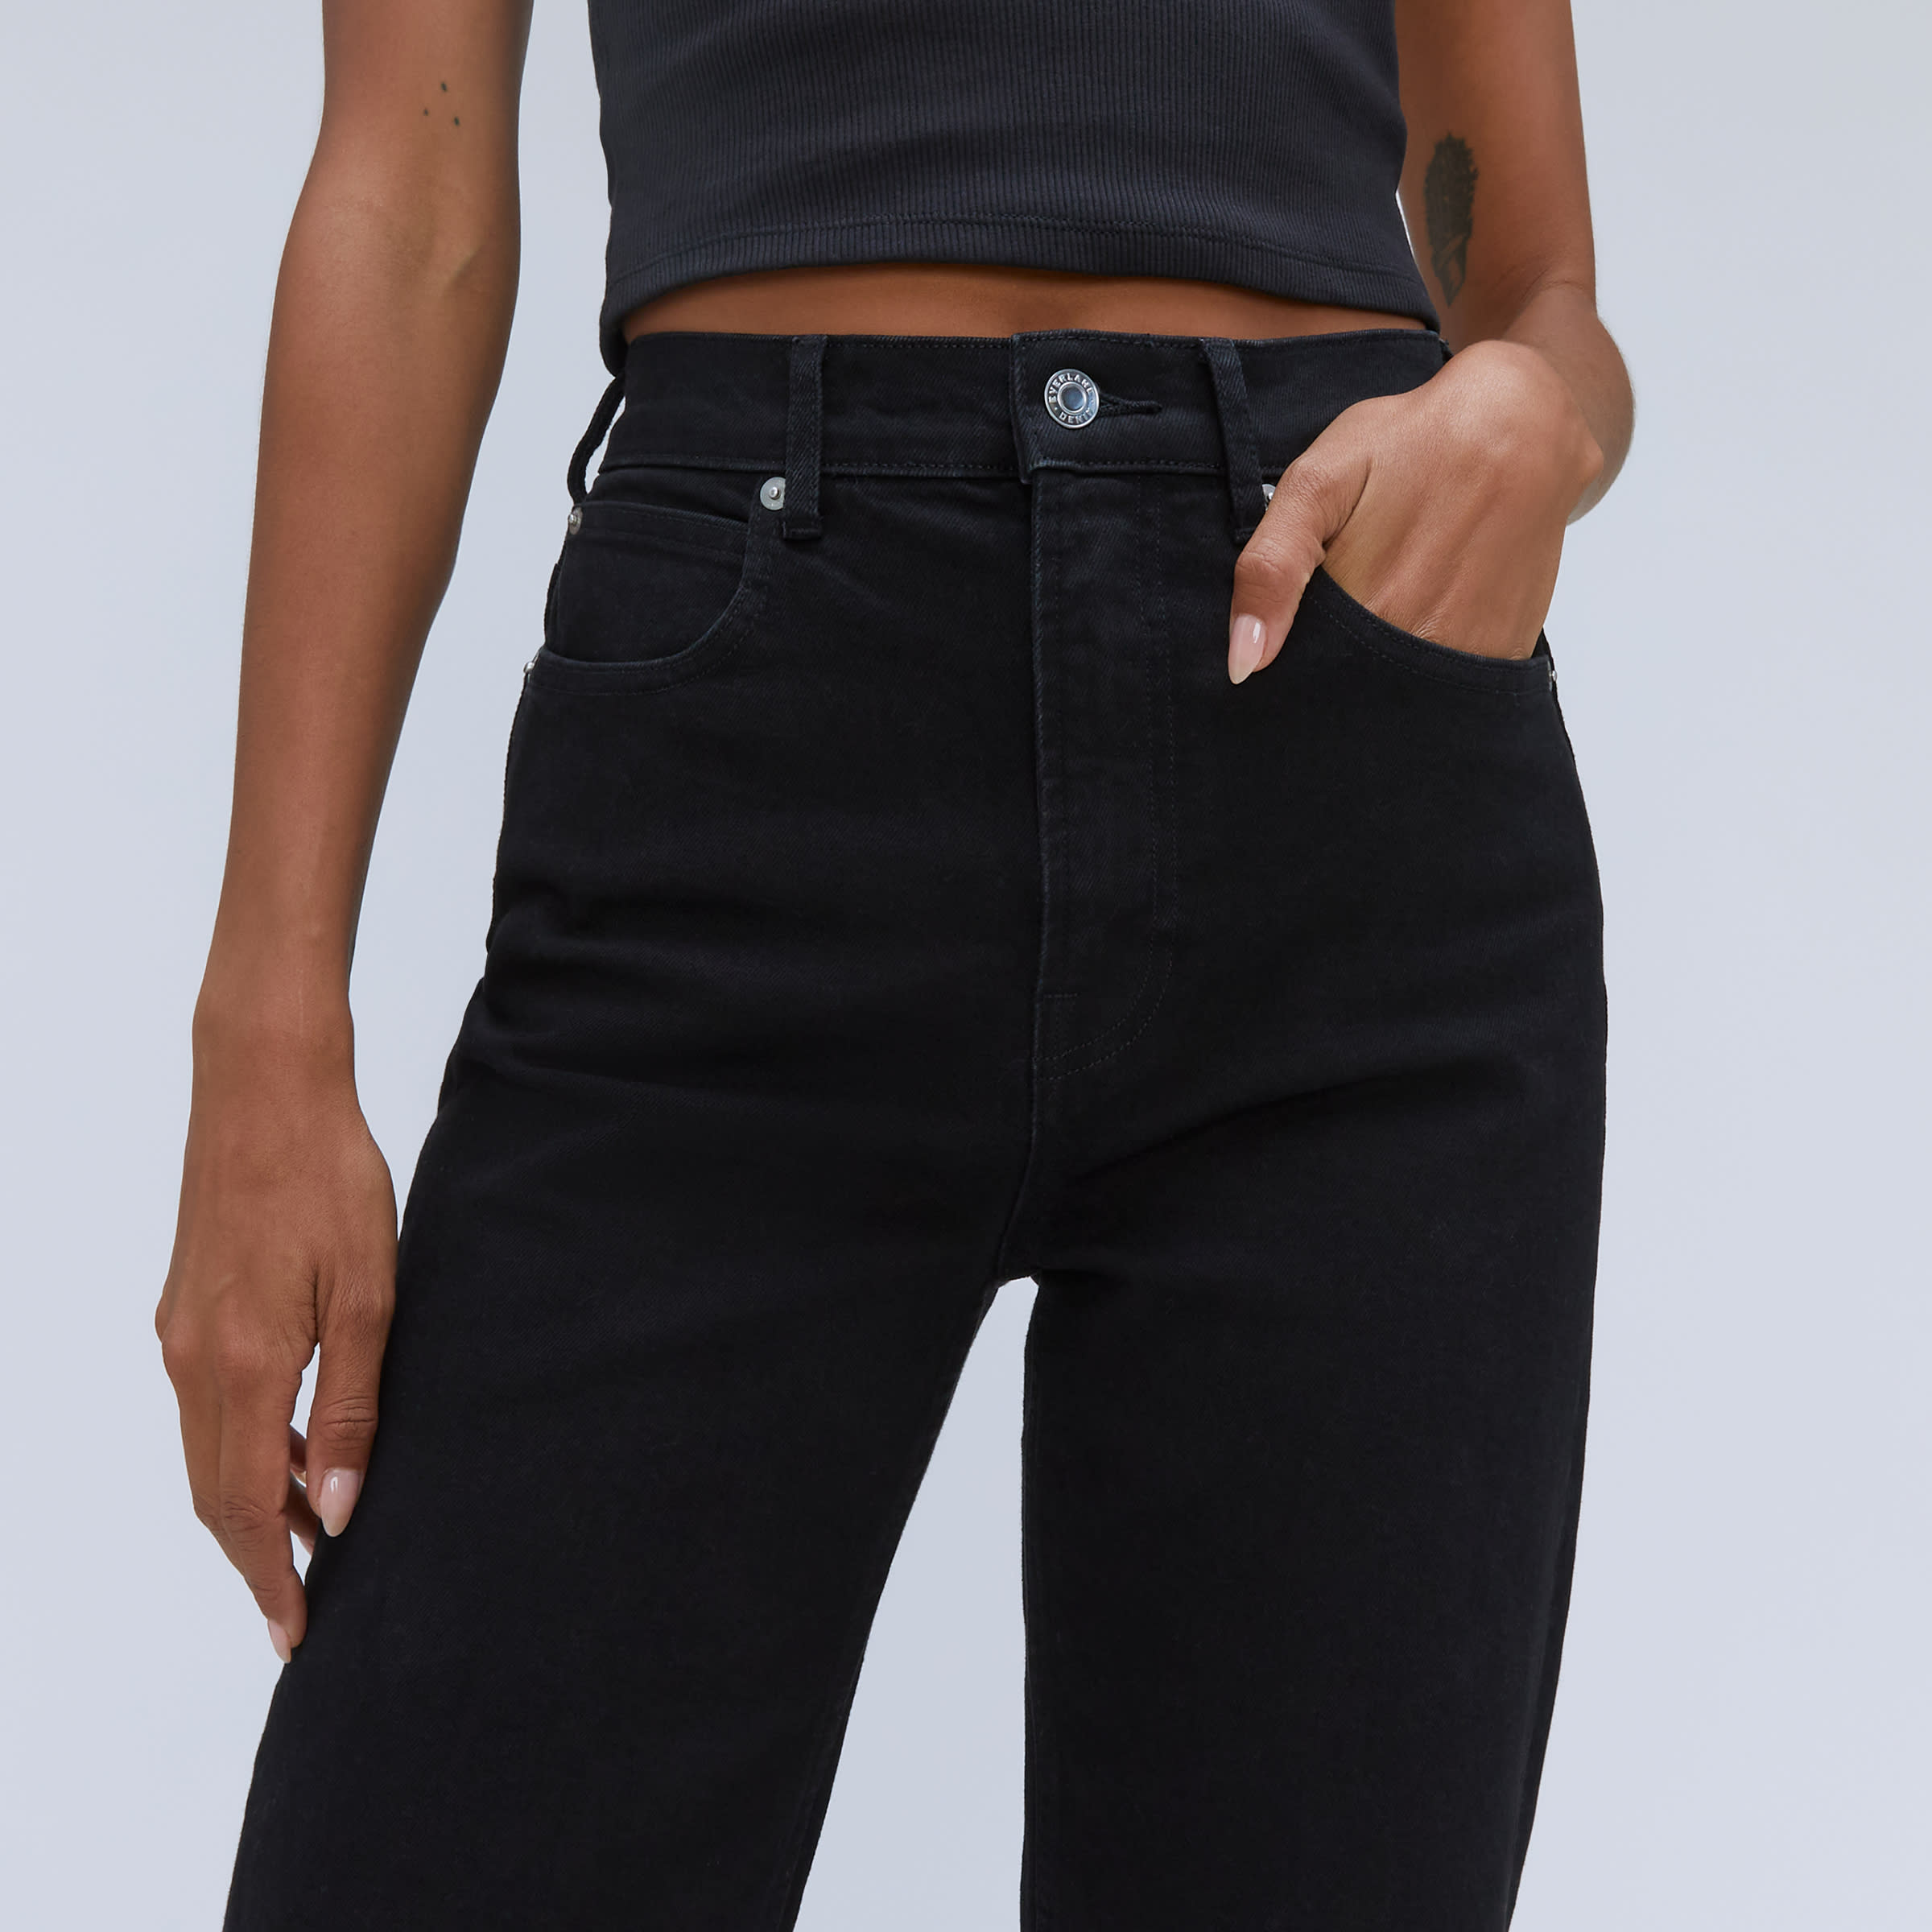 Acne Studios - Skinny fit jeans - Black